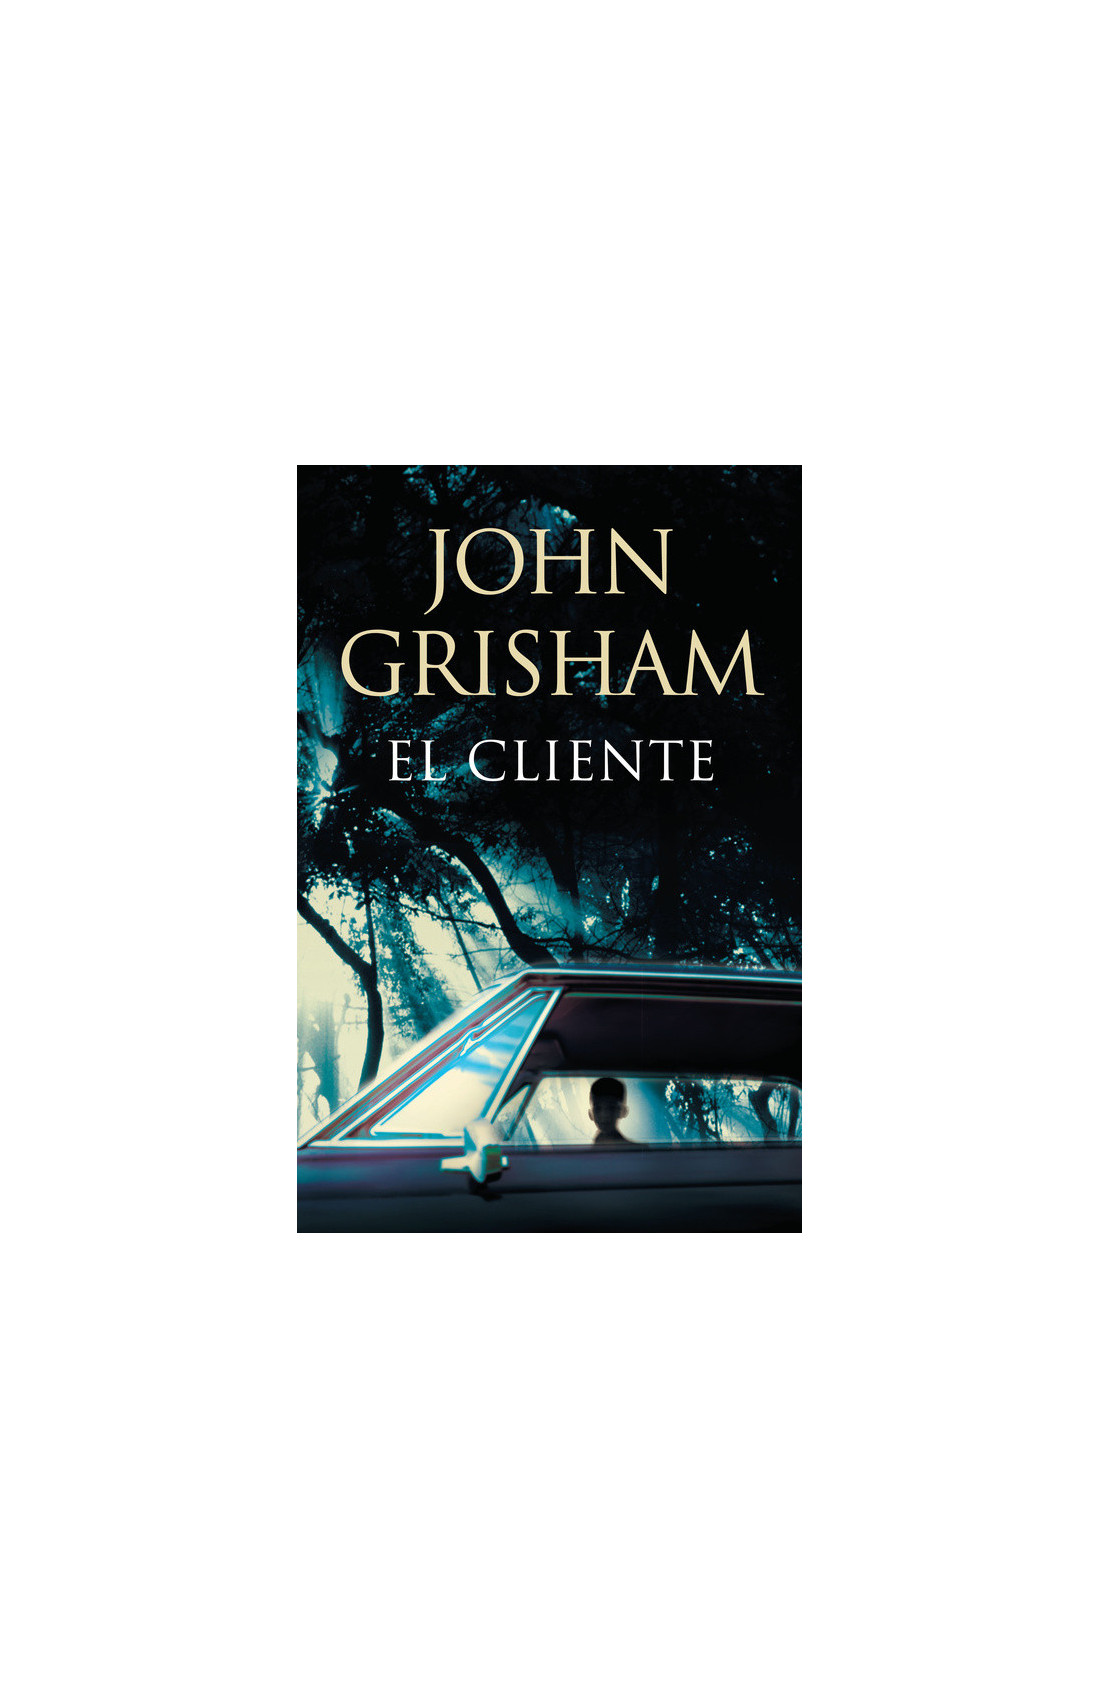 Remisión internacional Amoroso John Grisham: cinco libros para conocer al autor que dejó la abogacía y  ahora es el más vendido - Infobae